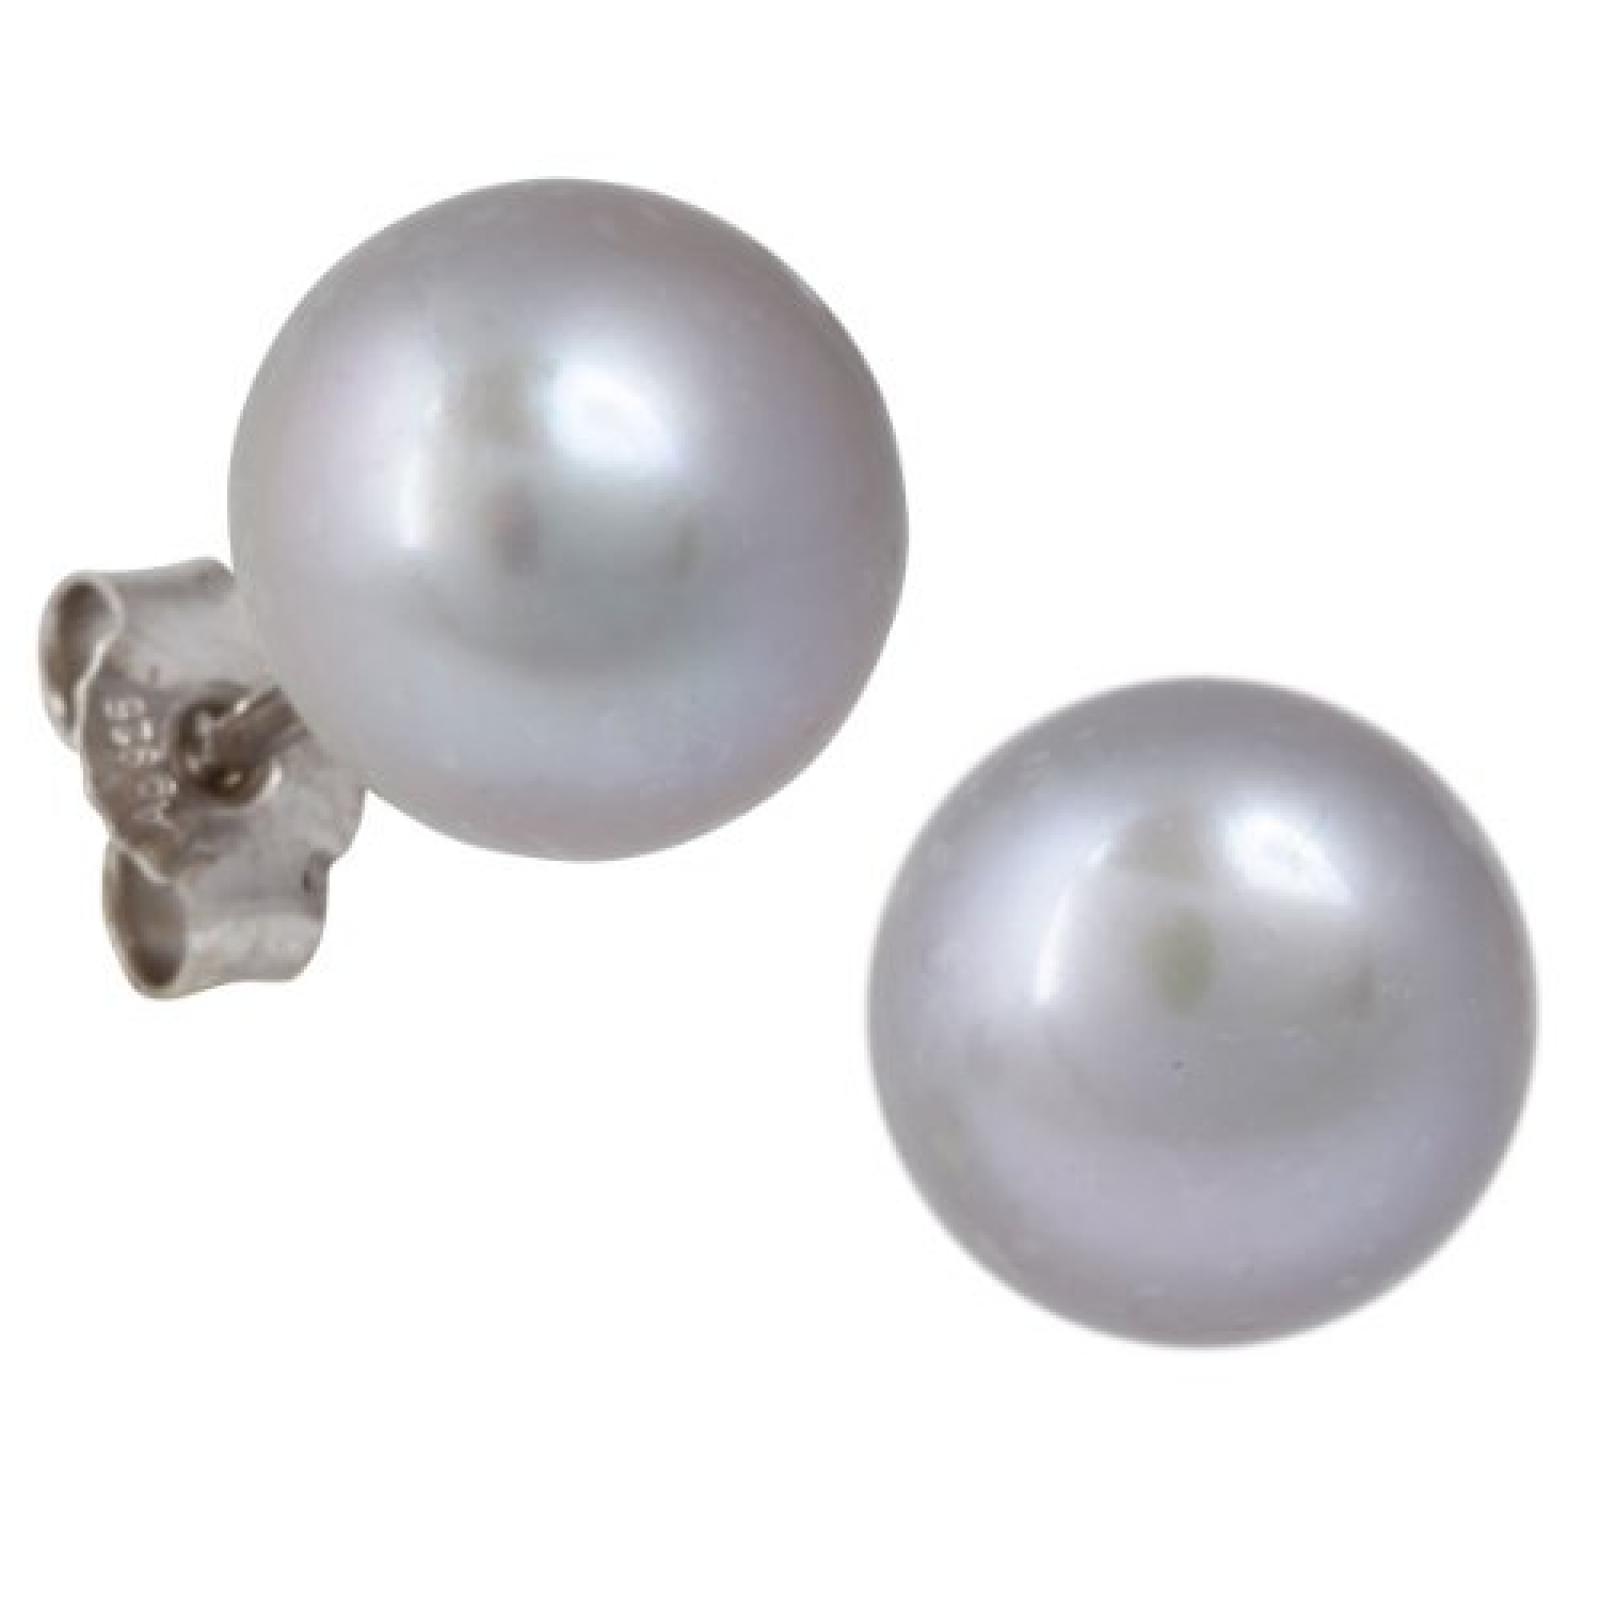 Bella Donna Damen Perlen-Ohrstecker 925/000 Silber 2 Süßwasserzucht-Perlen grau Button 10,0 - 10,5 mm 656307 